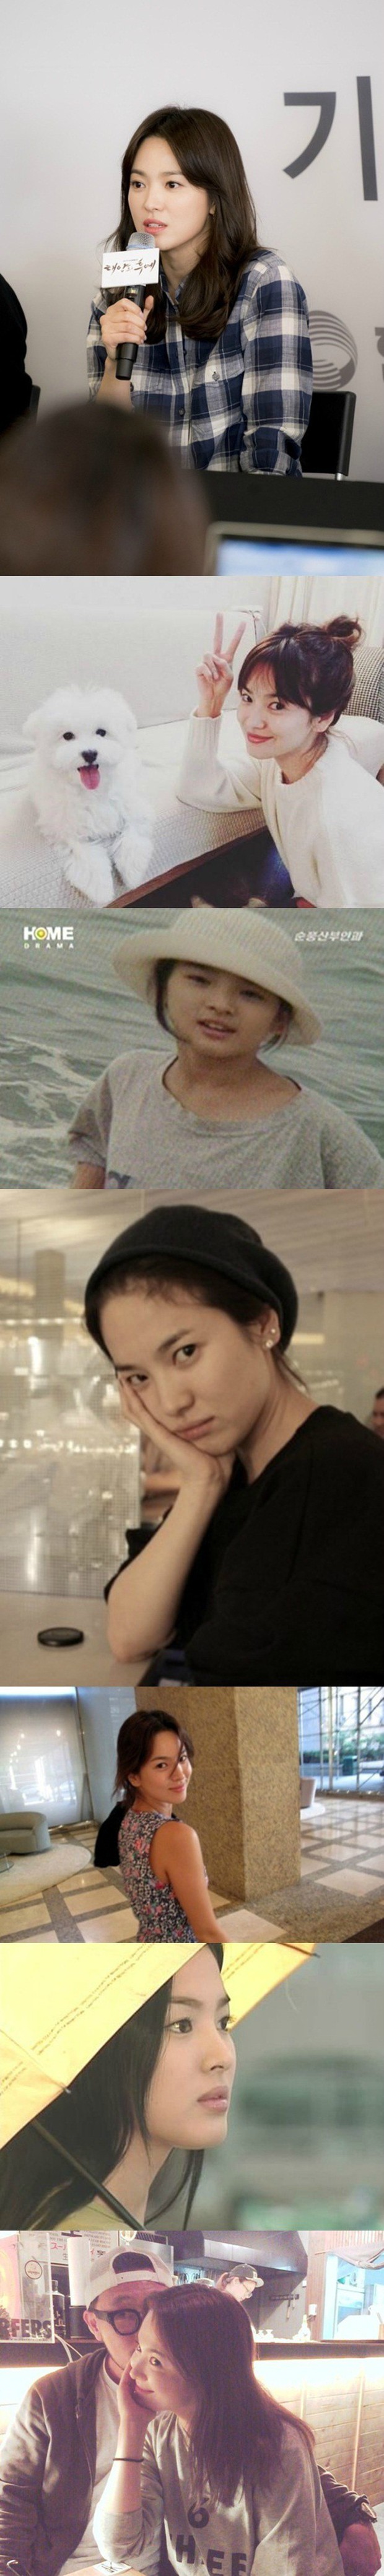 Nhan sắc của Song Hye Kyo: Tạp chí đã đẹp, nhưng xuất sắc nhất là những khoảnh khắc đời thường - Ảnh 5.